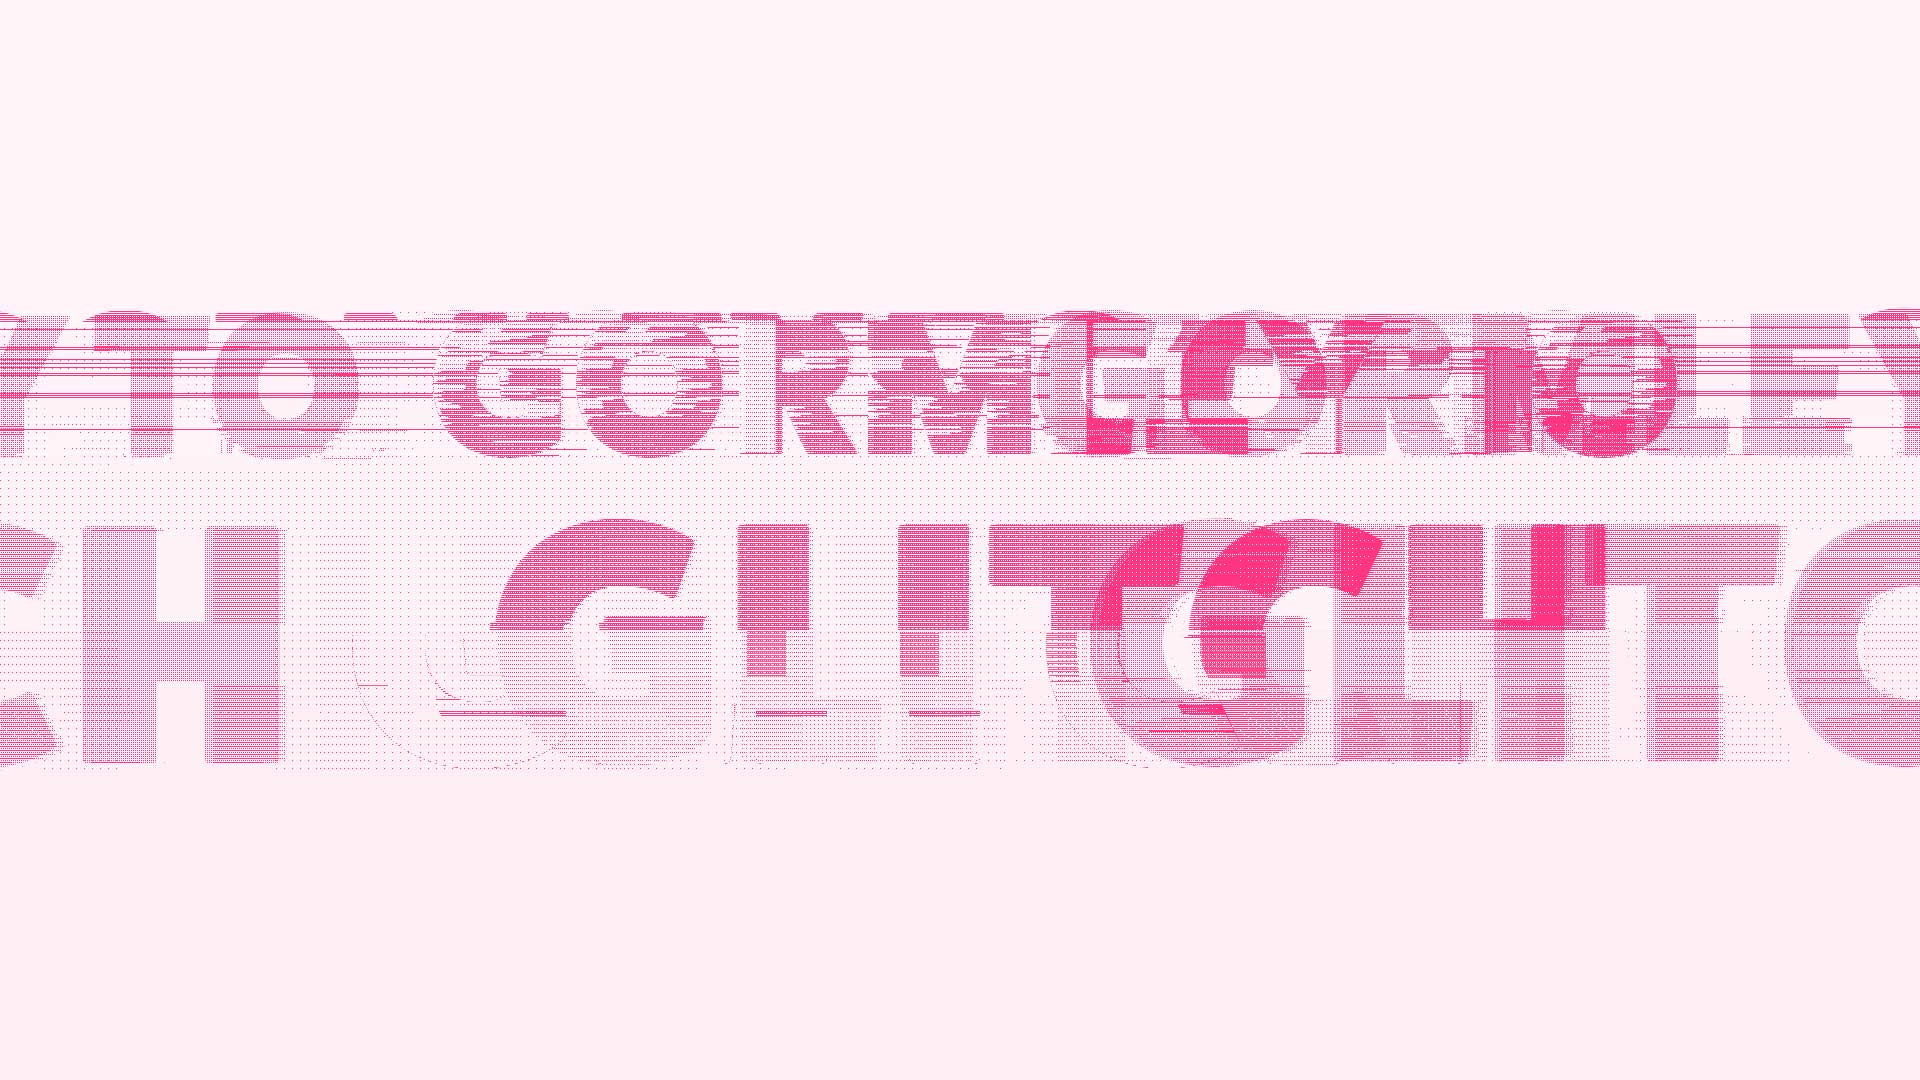 Gormley to Glitch